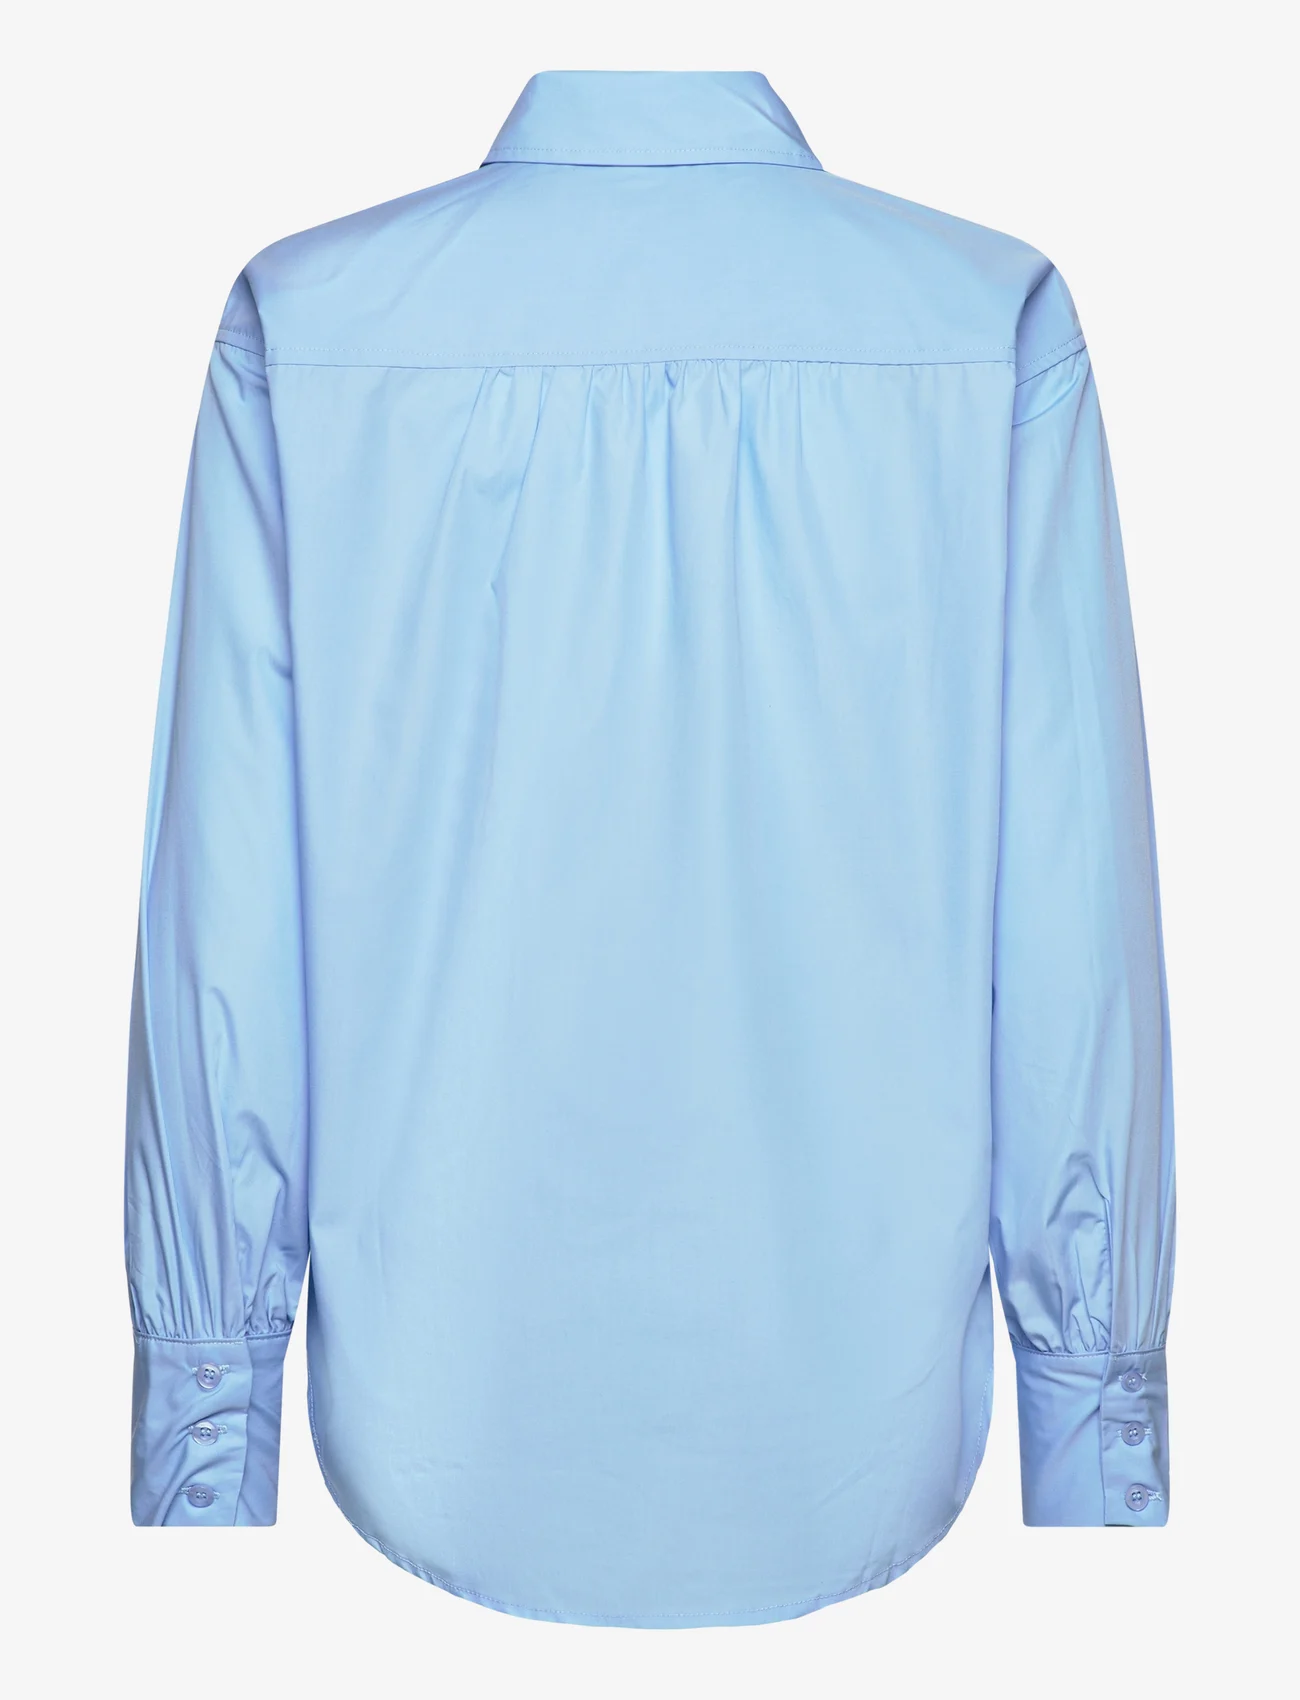 Rosemunde - RWSEbony shirt w/ruffles - overhemden met lange mouwen - heaven - 1